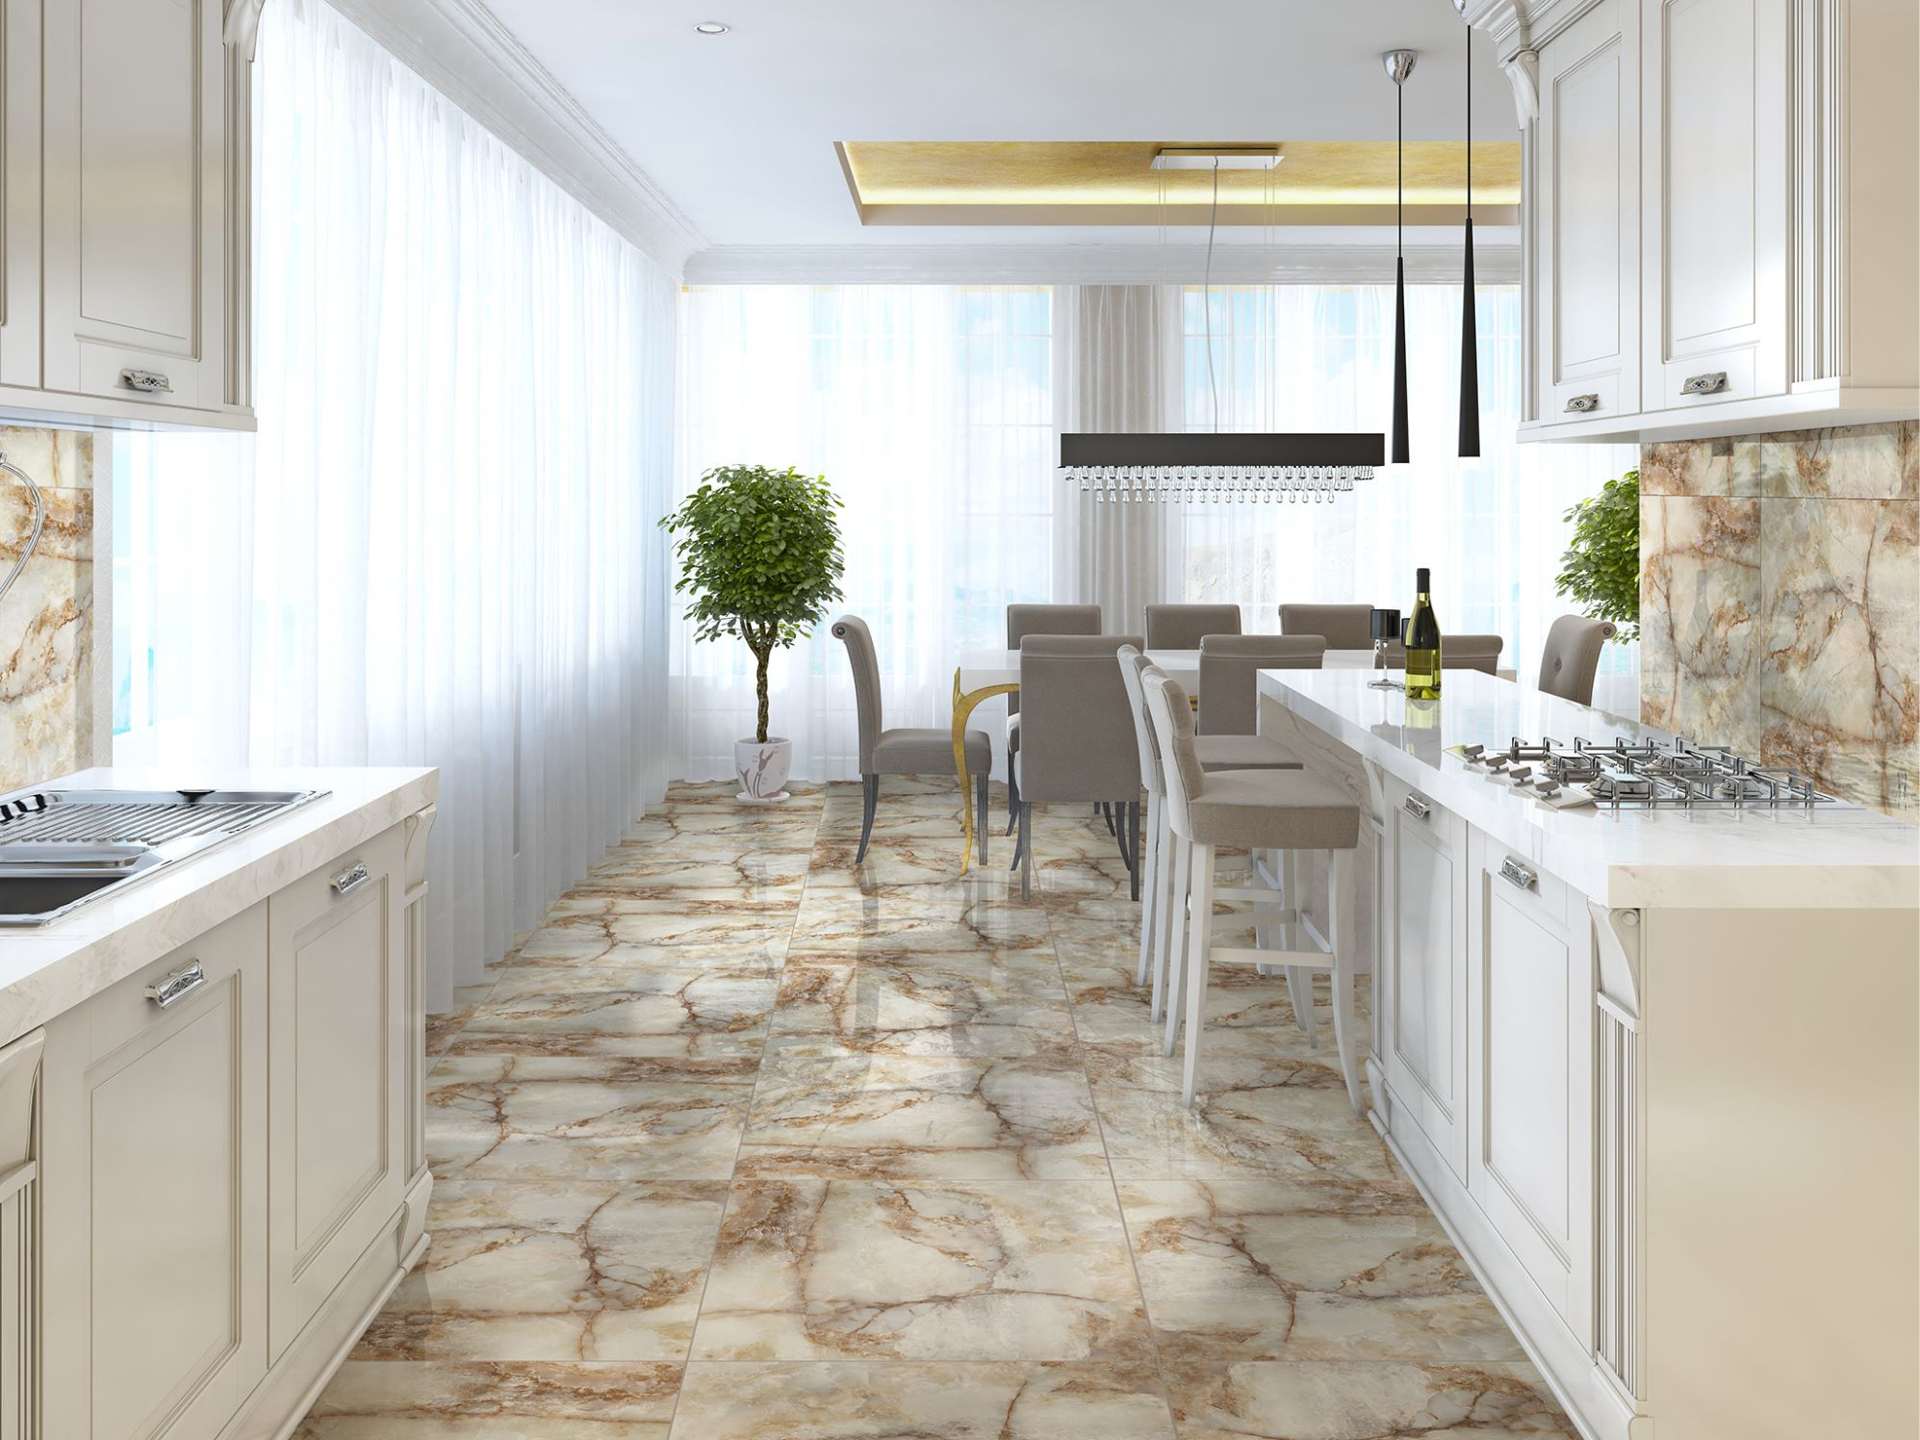 Como limpiar el suelo de mármol para que brille_Plano lateral de una cocina con suelo de marmol jaspeado